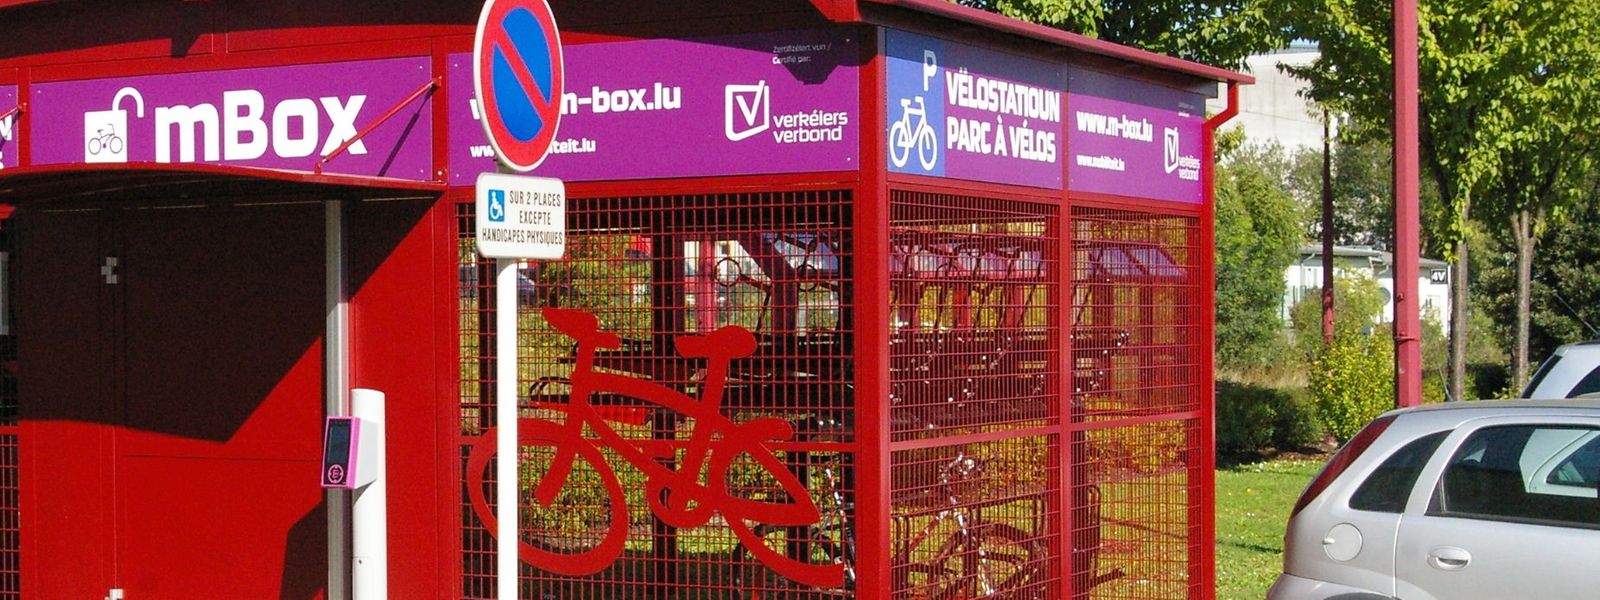 Avec la nouvelle installation, le Luxembourg compte maintenant 60 parcs à vélos mBox.